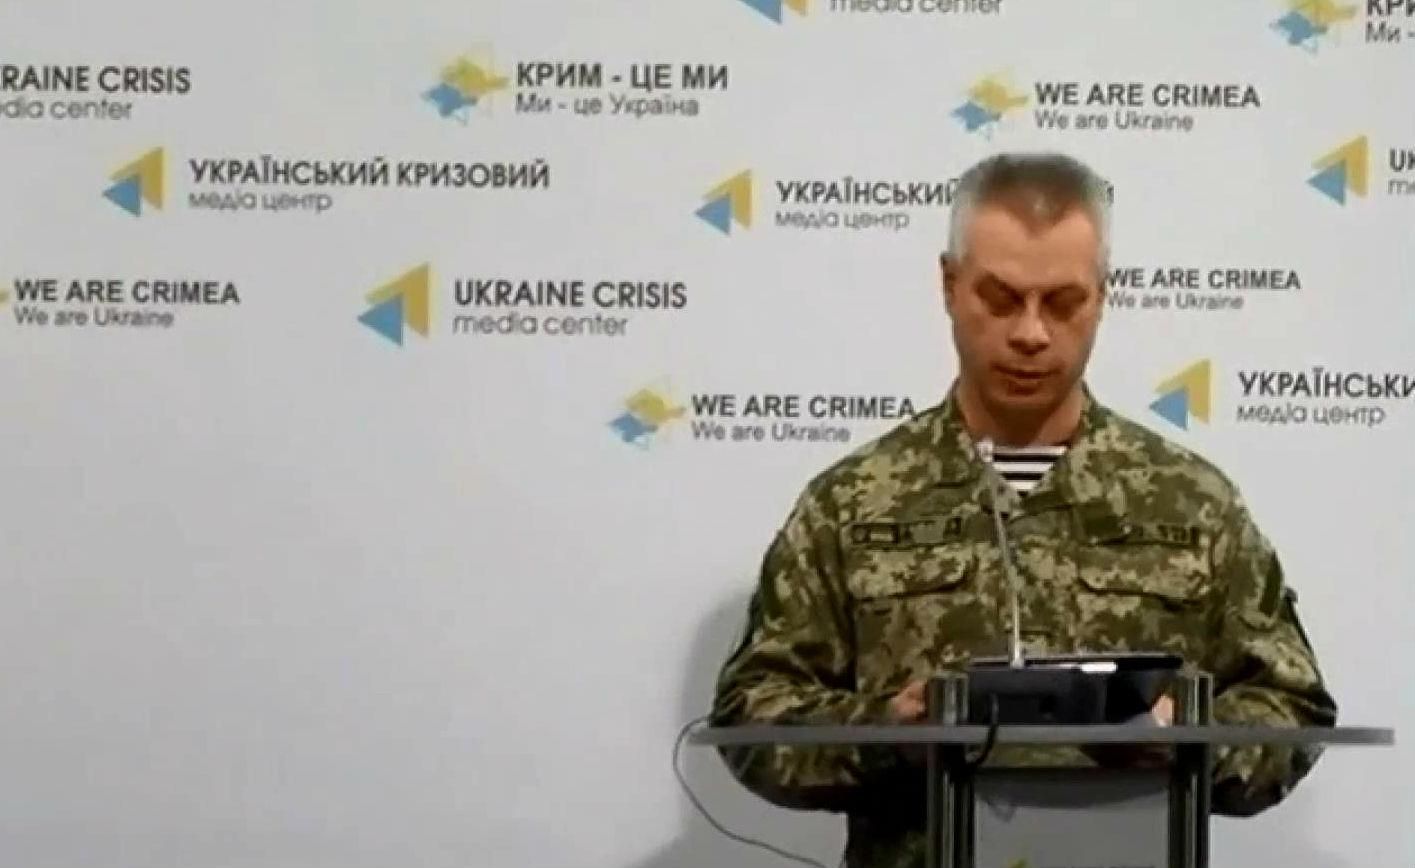 В зоне АТО украинские спецслужбы задержали боевика "ЛНР" и женщин-информаторов